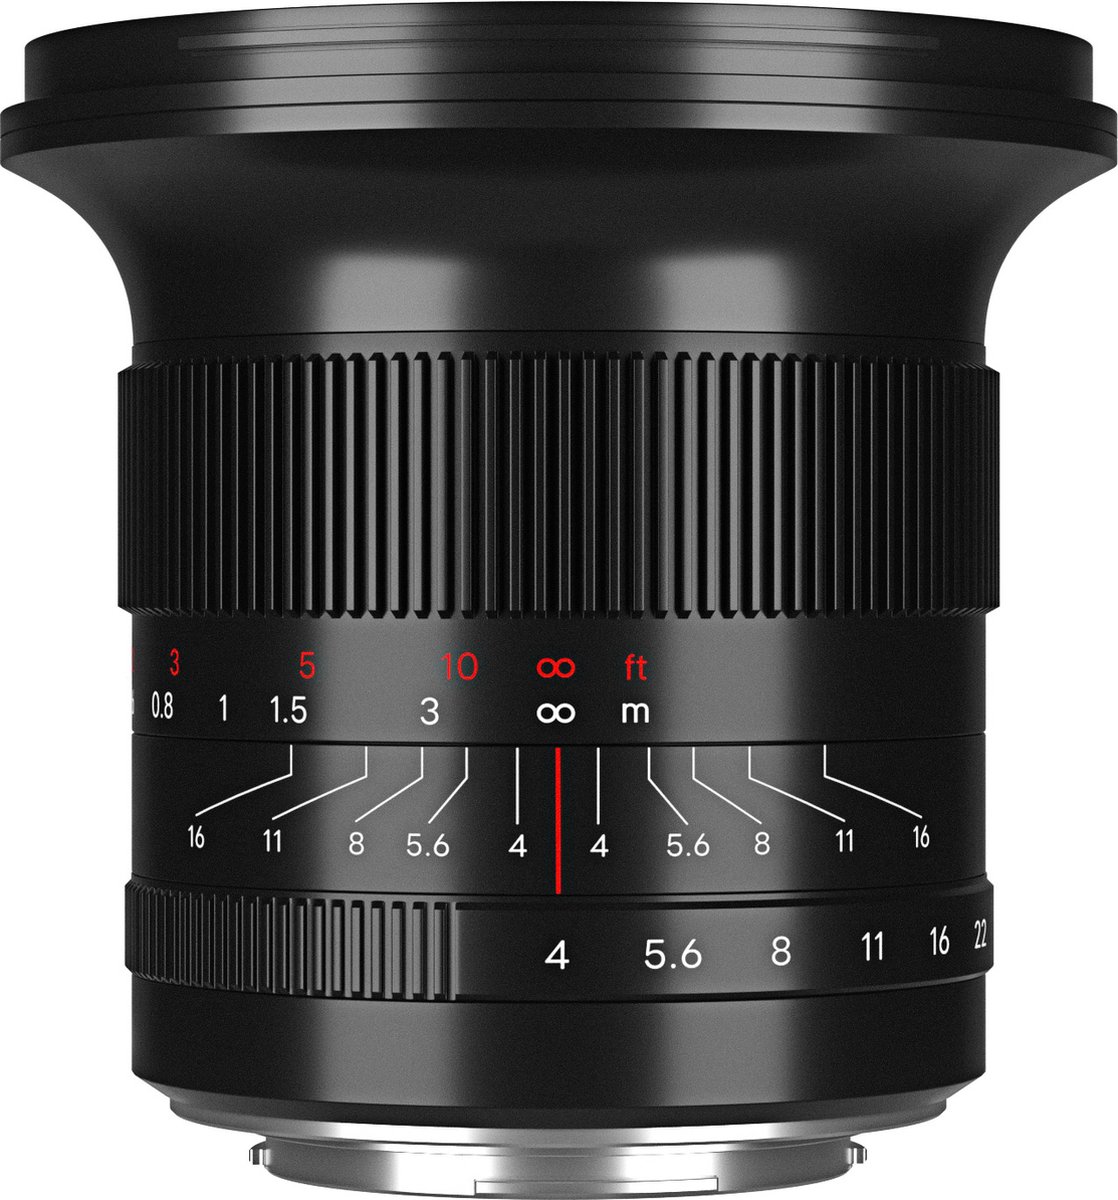 7 Artisans - Lens - 15mm F/4.0 voor Nikon Z-vatting, zwart